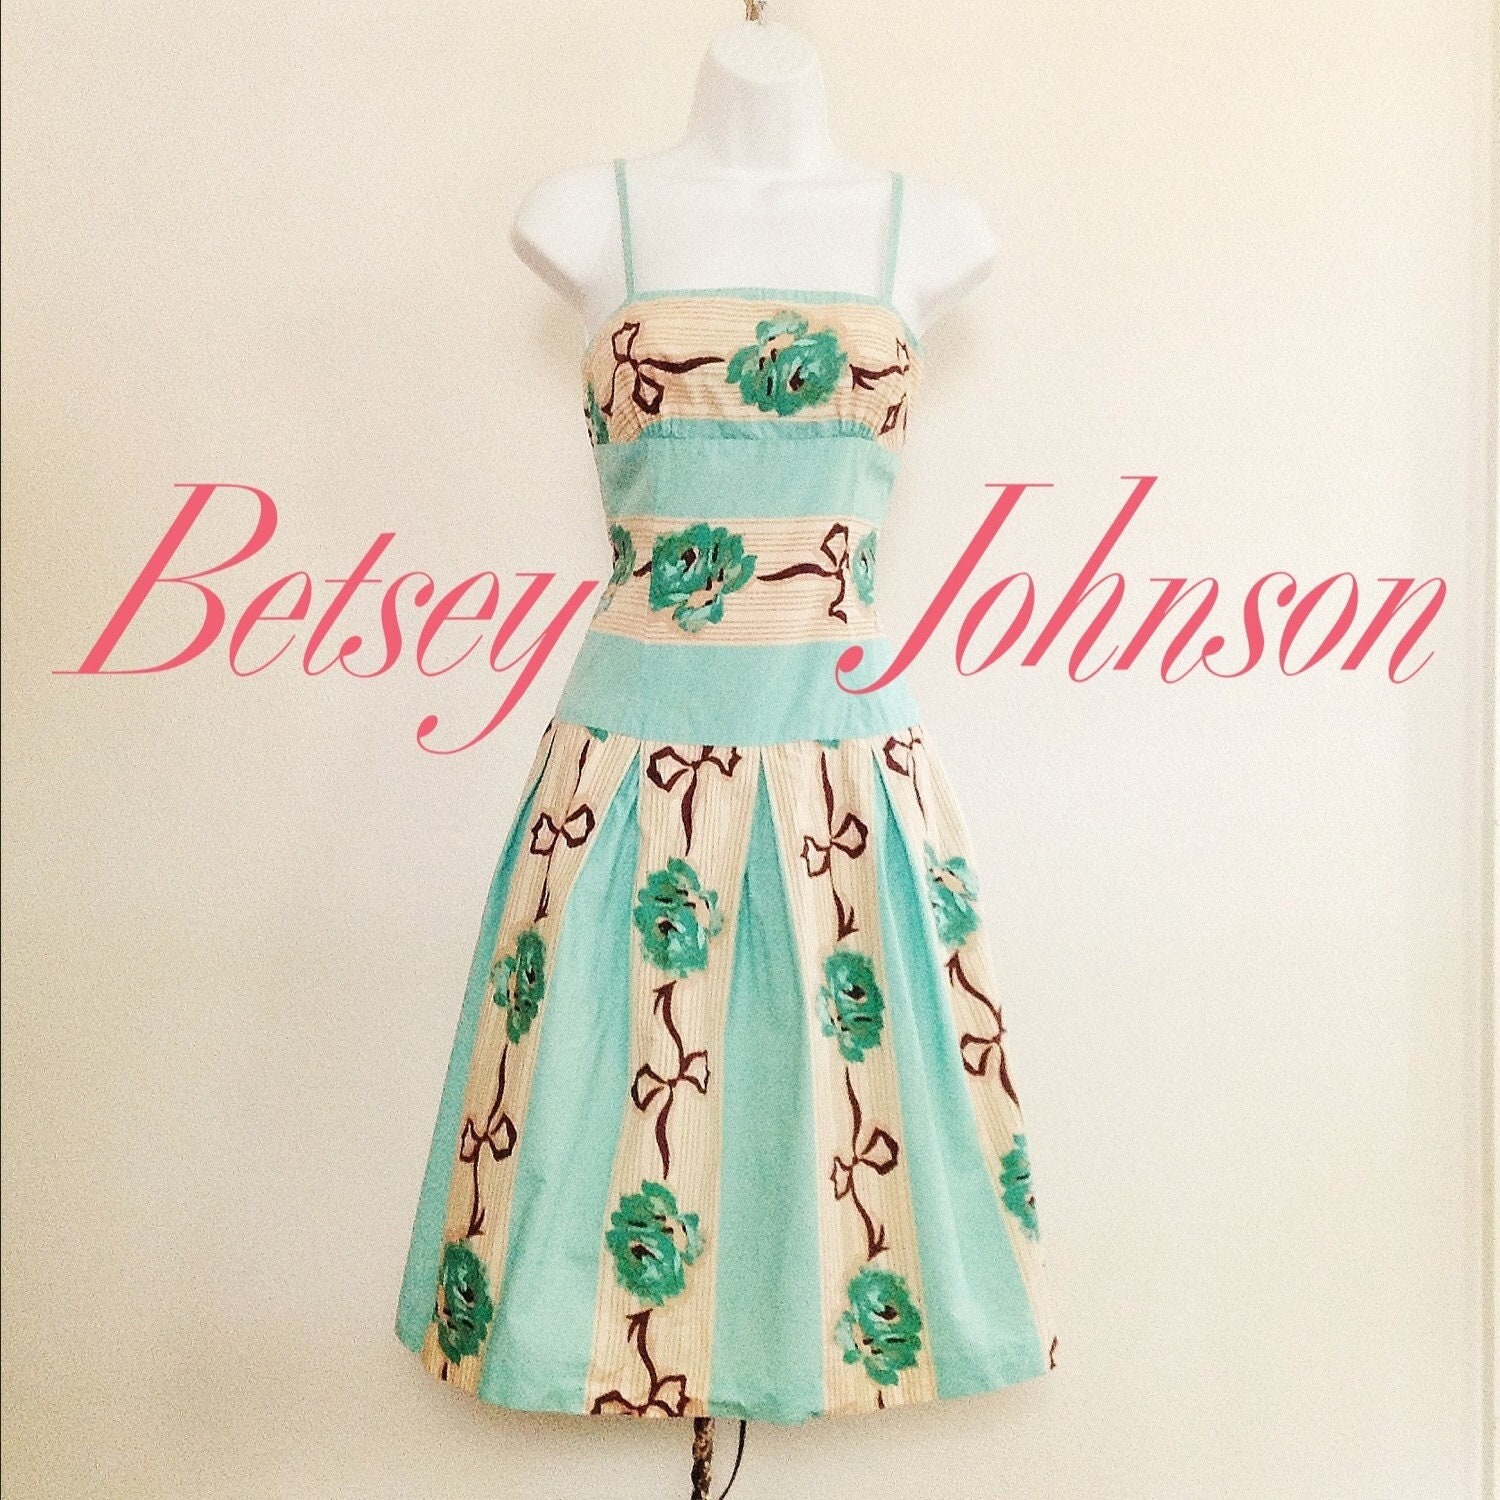 Vintage Betsey Johnson Y2K Handbag Black Pink Rosebud Floral Clear